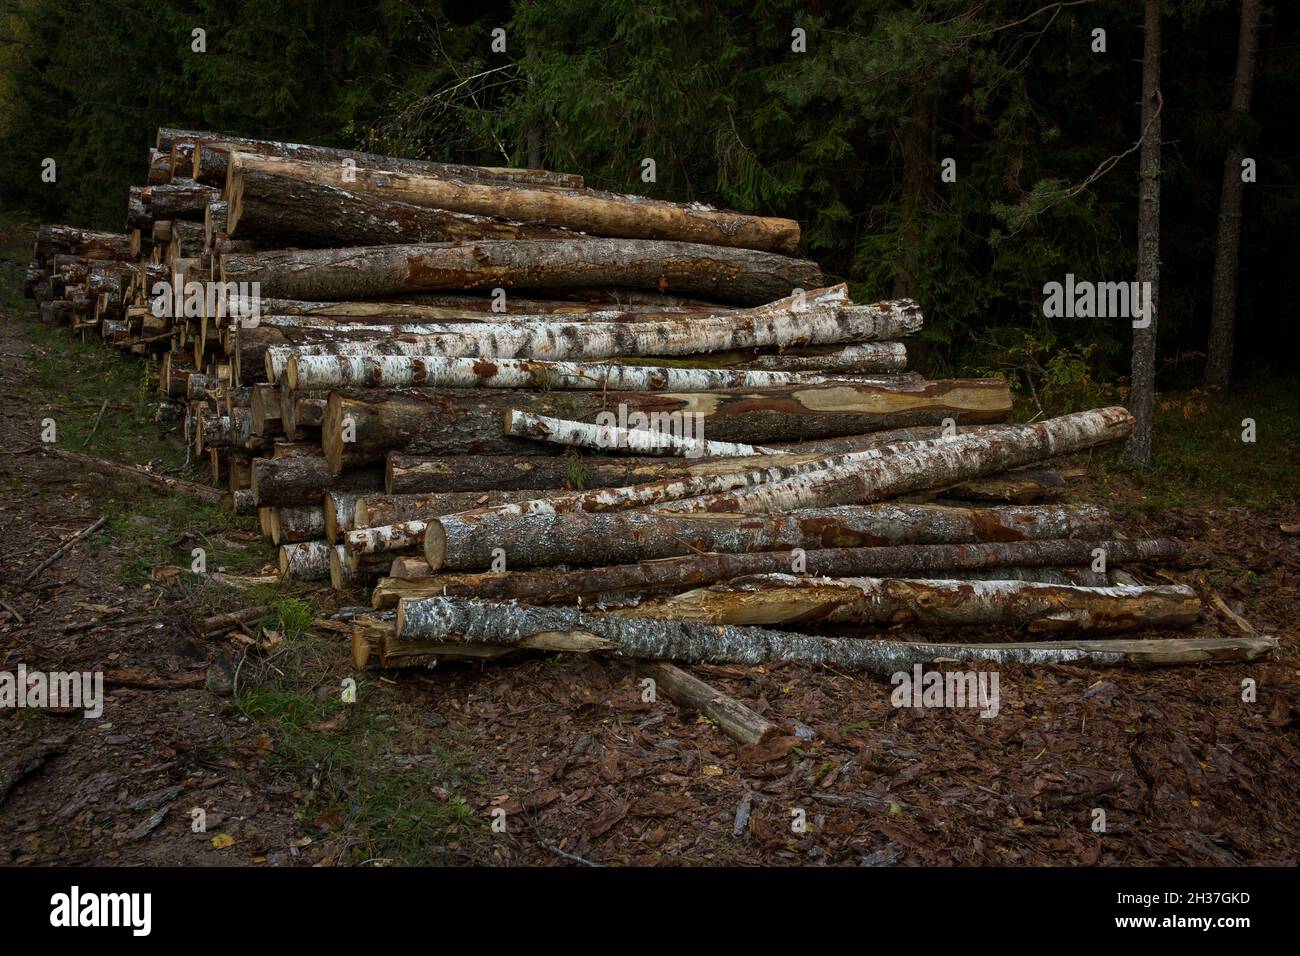 Des piles de bois le long de la route forestière.Pins forestiers et épinettes.Troncs en rondins pile, l'industrie forestière du bois d'œuvre. Banque D'Images